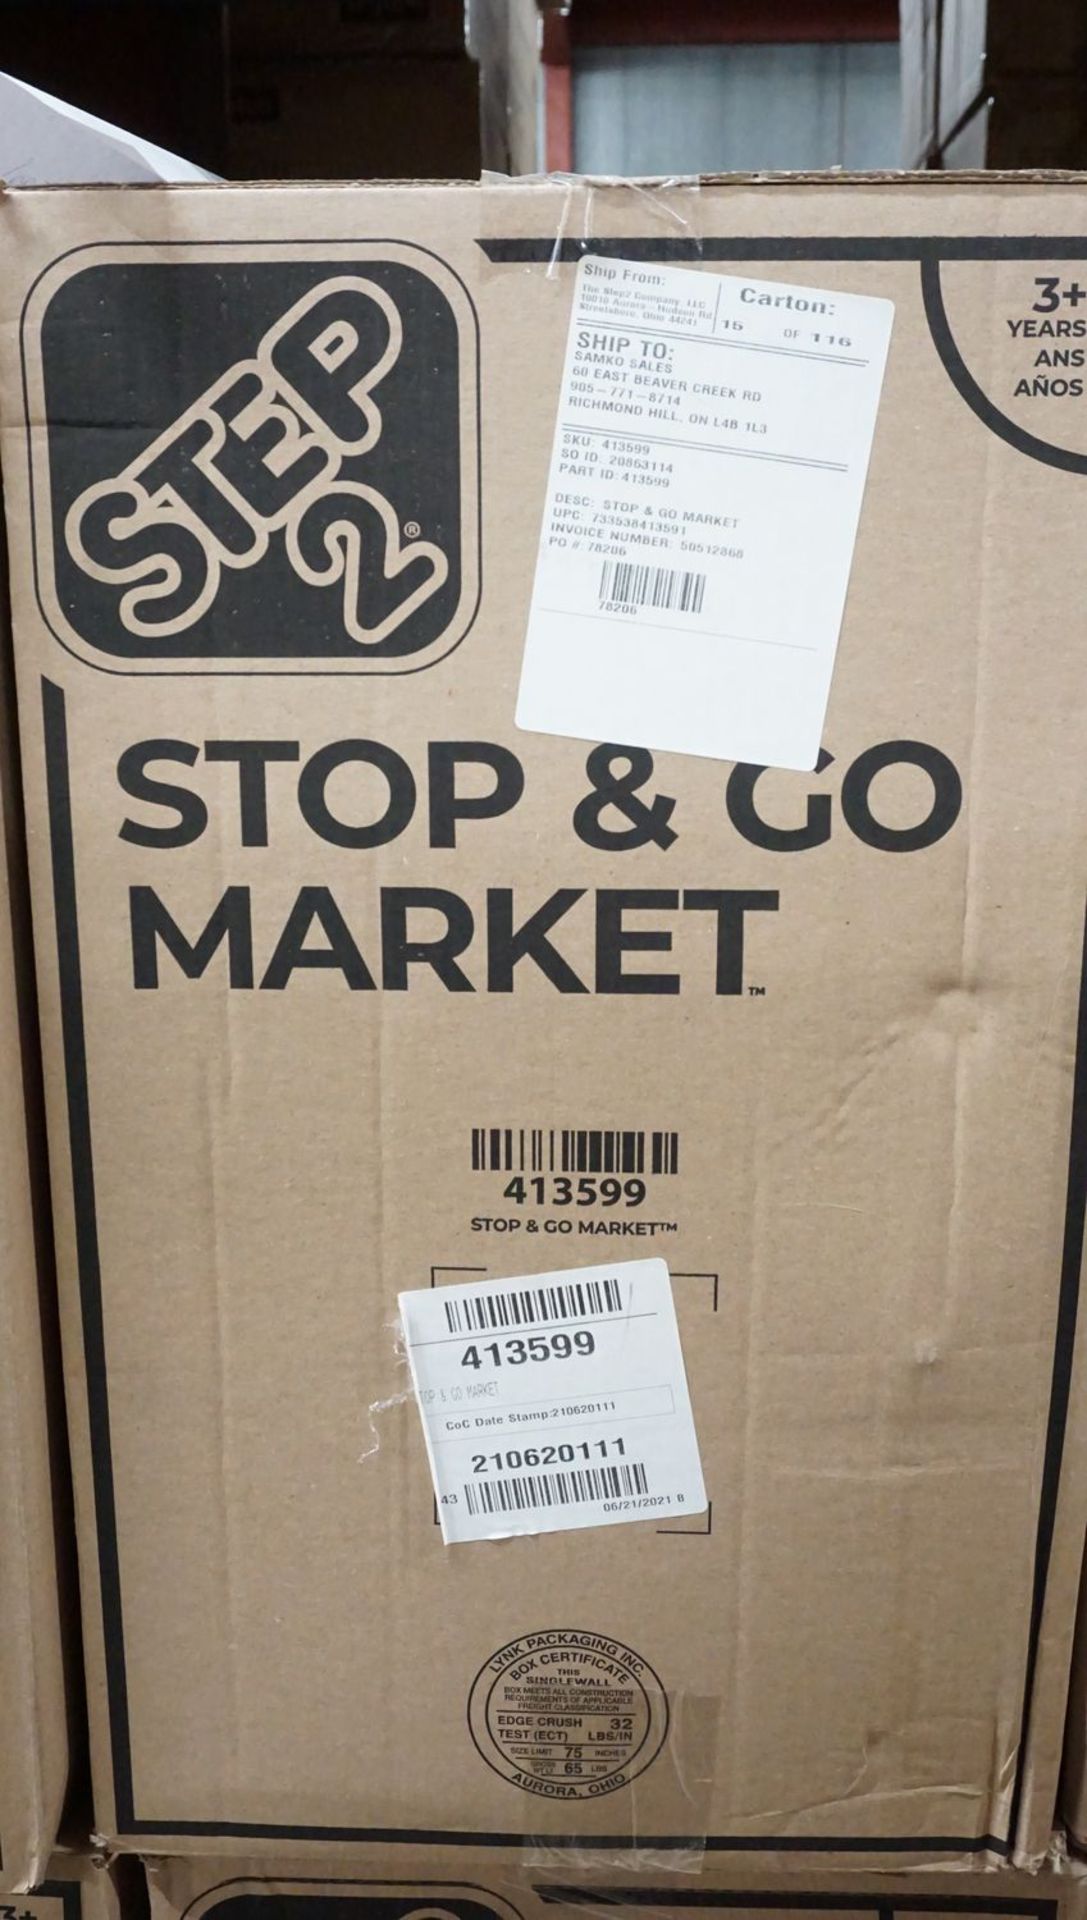 STEP2 STOP&GO MARKET (413599) (MSRP $200)